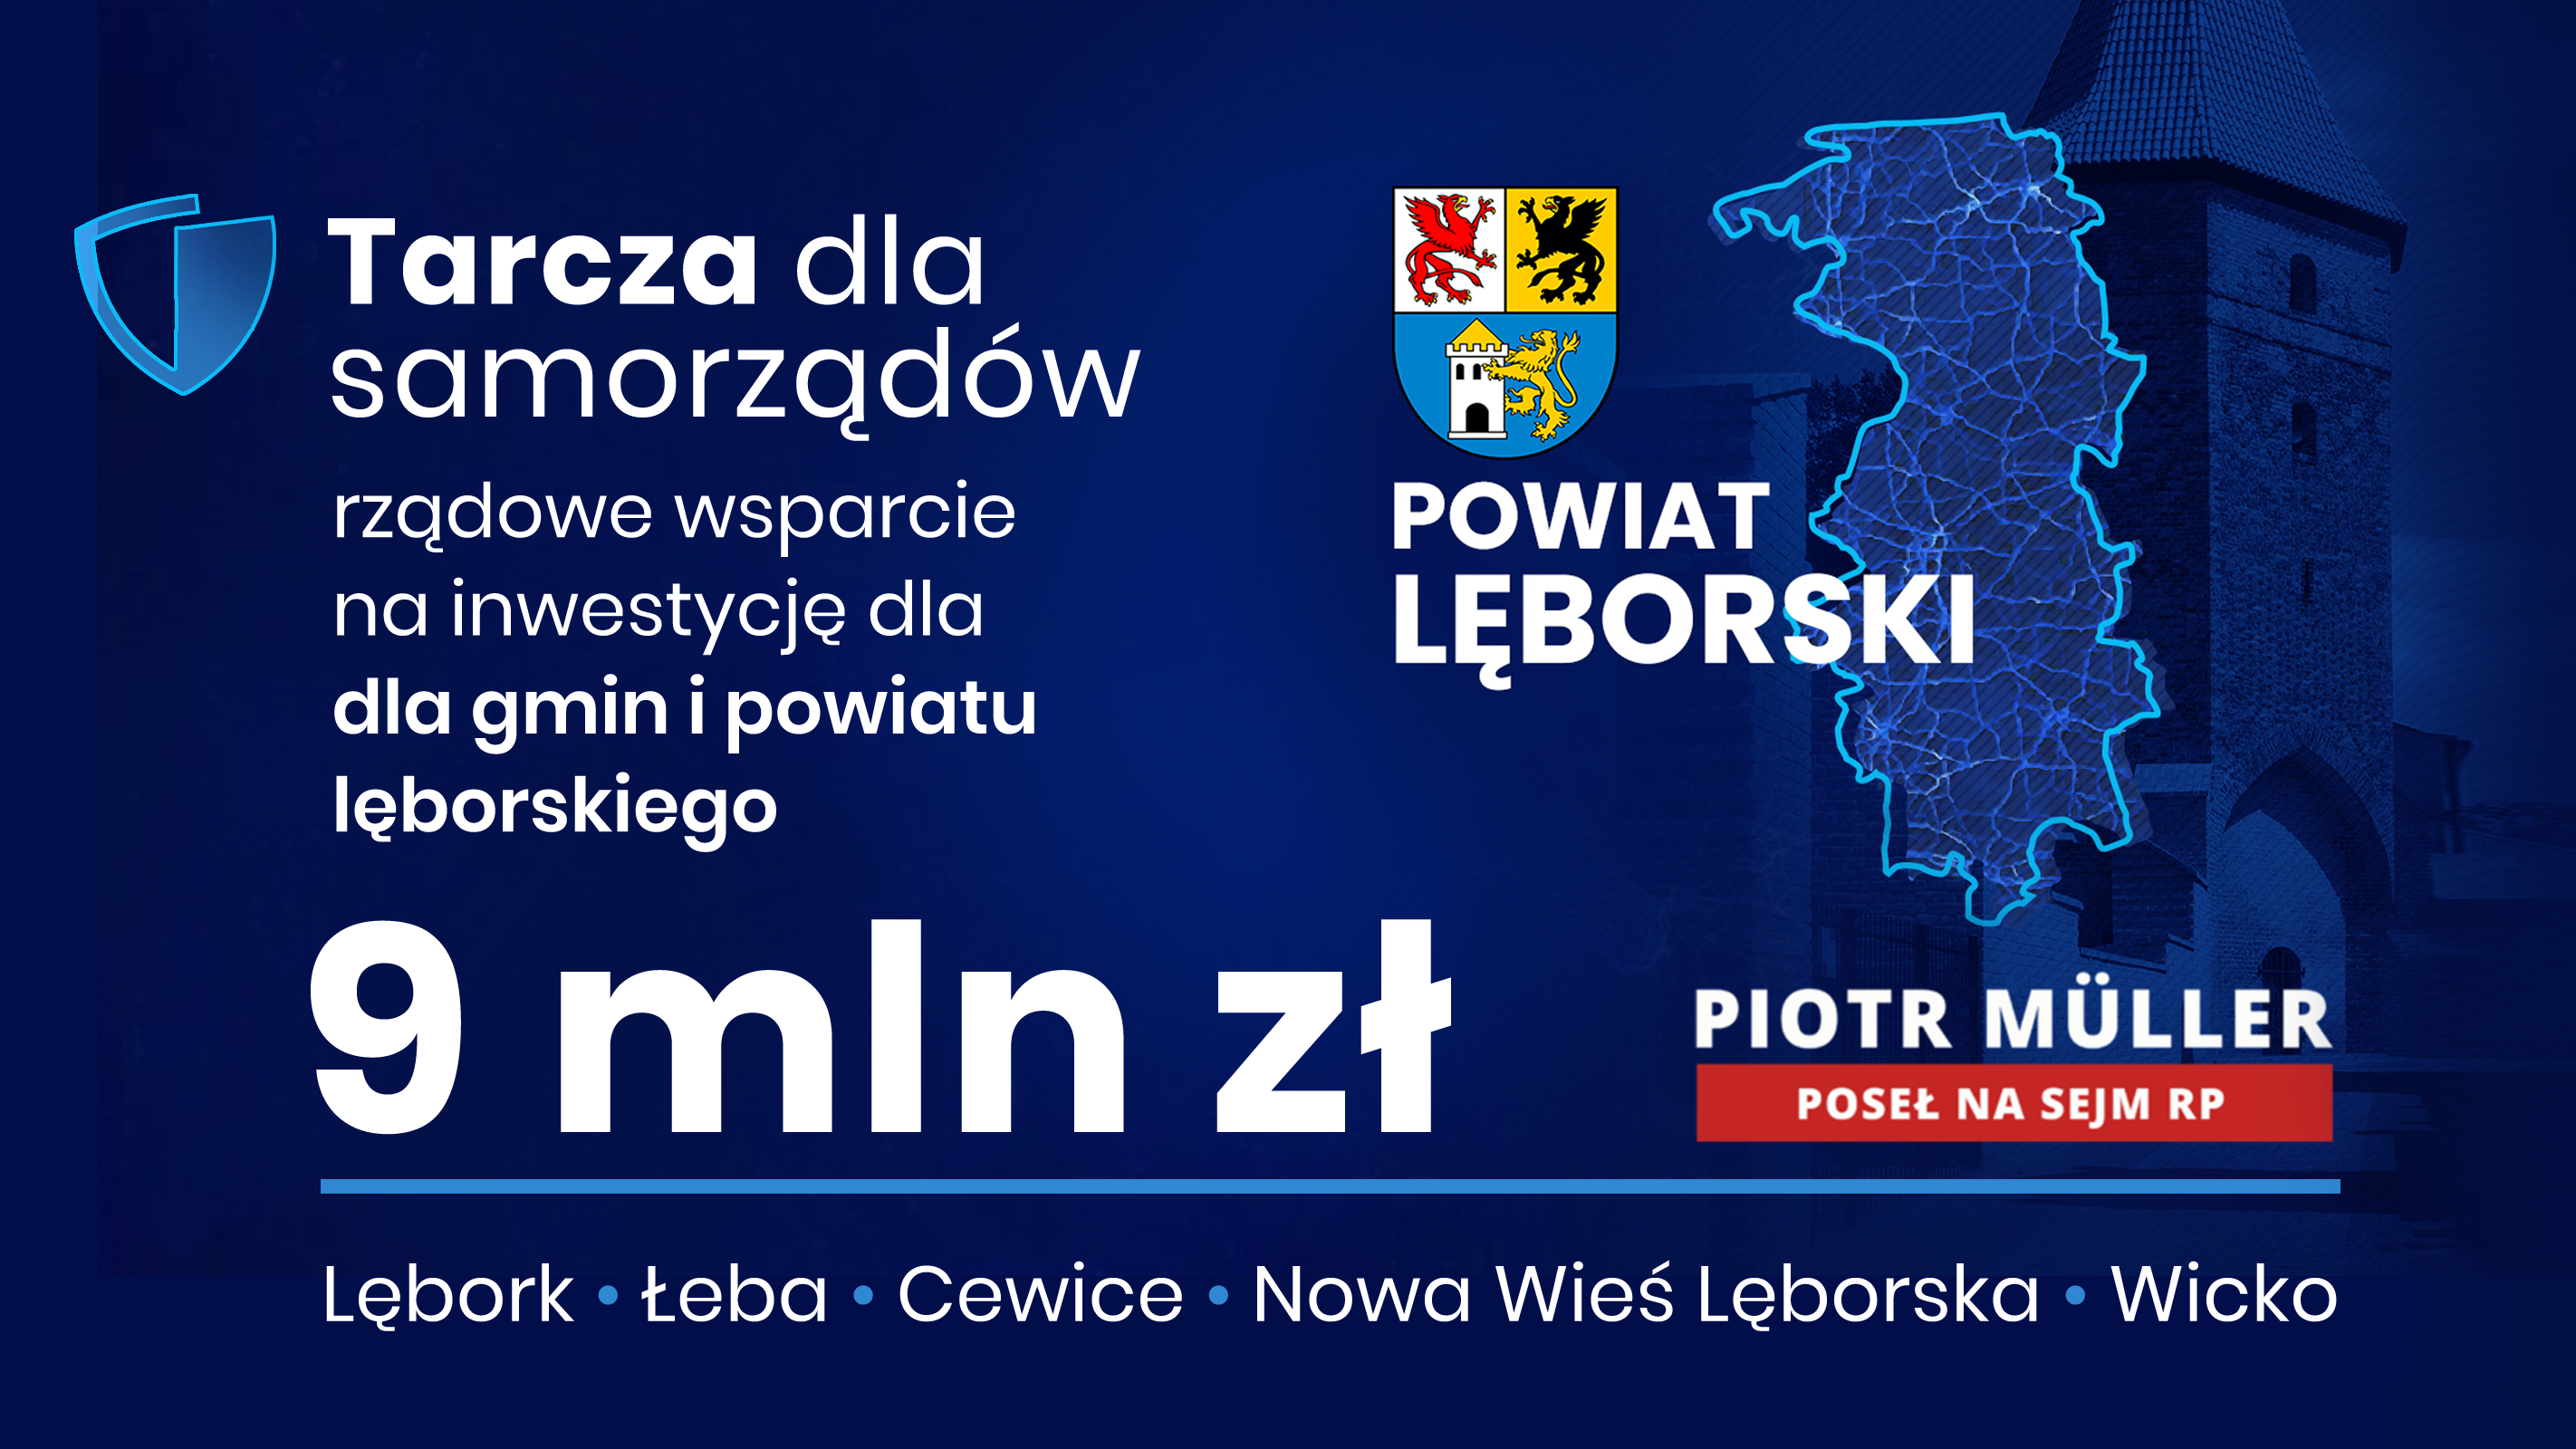 W sumie przeszło 9 mln zł dla regionu lęborskiego z Rządowej Tarczy dla Samorządów. Nowa tarcza w sprawiedliwy sposób wspiera zarówno większe miasta, jak i najmniejsze miejscowości.